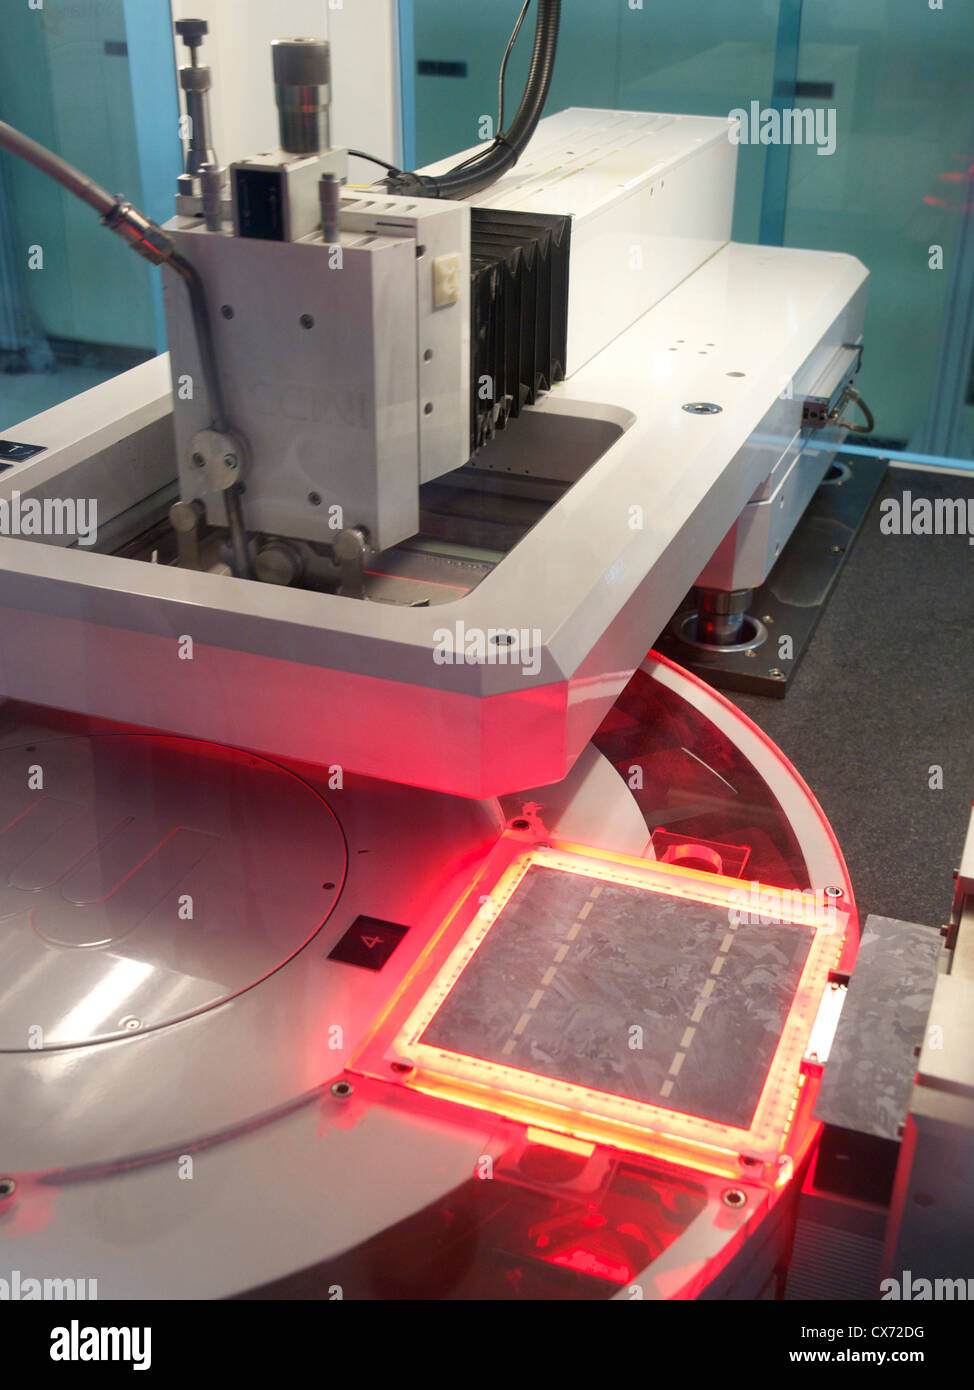 Produzione di celle solari, questa macchina serigrafica è utilizzato per stampare il bus-bar su fette di silicio utilizzando una speciale pasta di argento Foto Stock